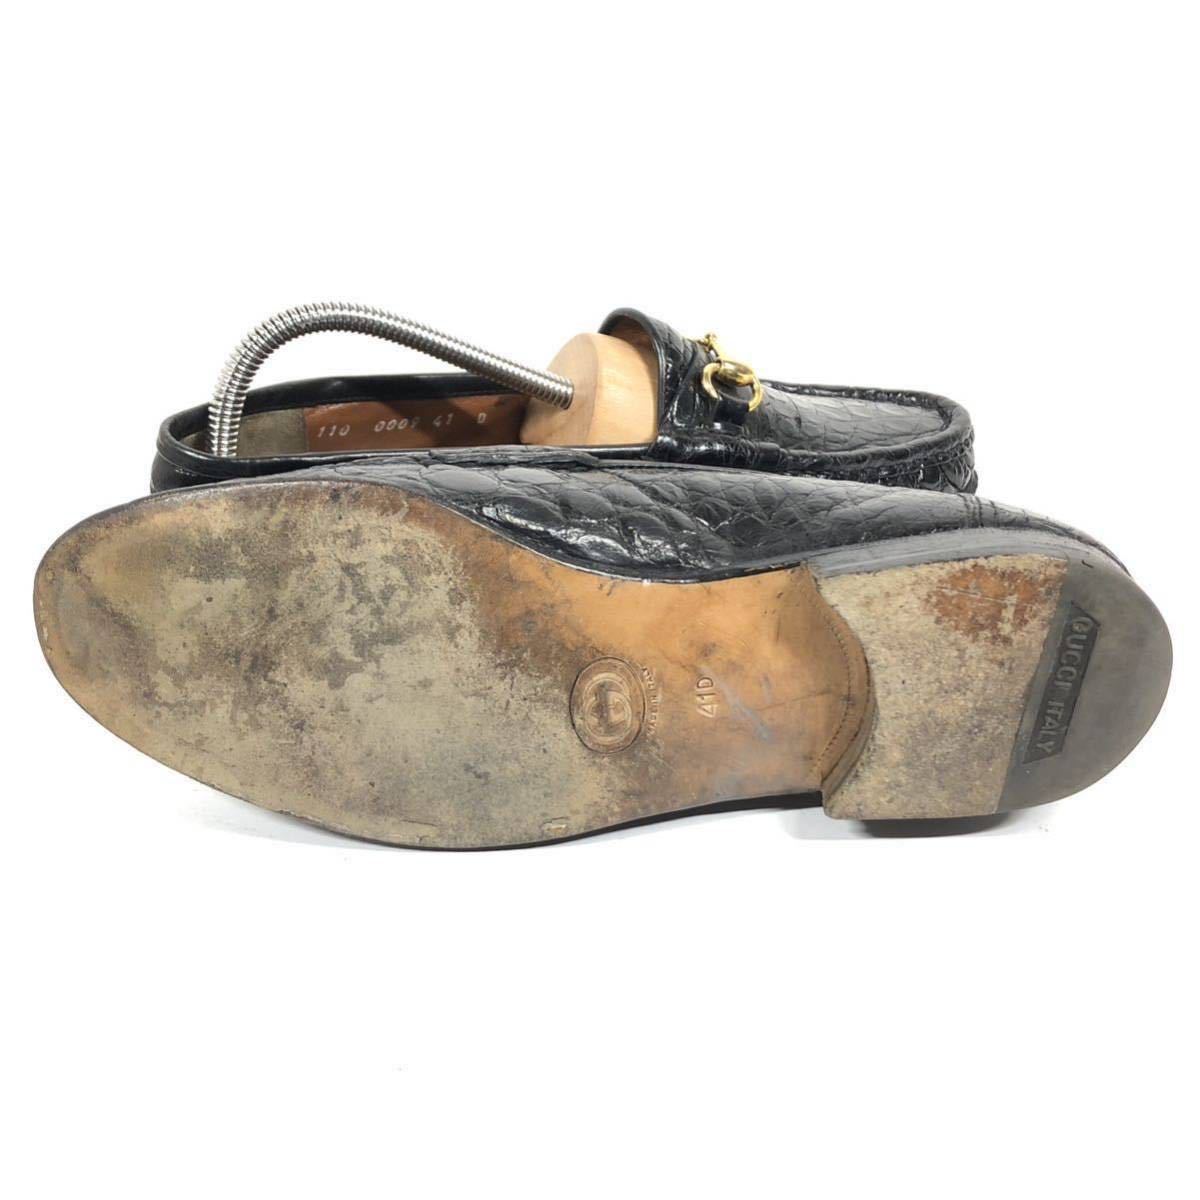 [ Gucci ] подлинный товар GUCCI обувь 26cm чёрный общий крокодил шланг bit bit Loafer туфли без застежки бизнес обувь wani кожа мужской сделано в Италии 41 D